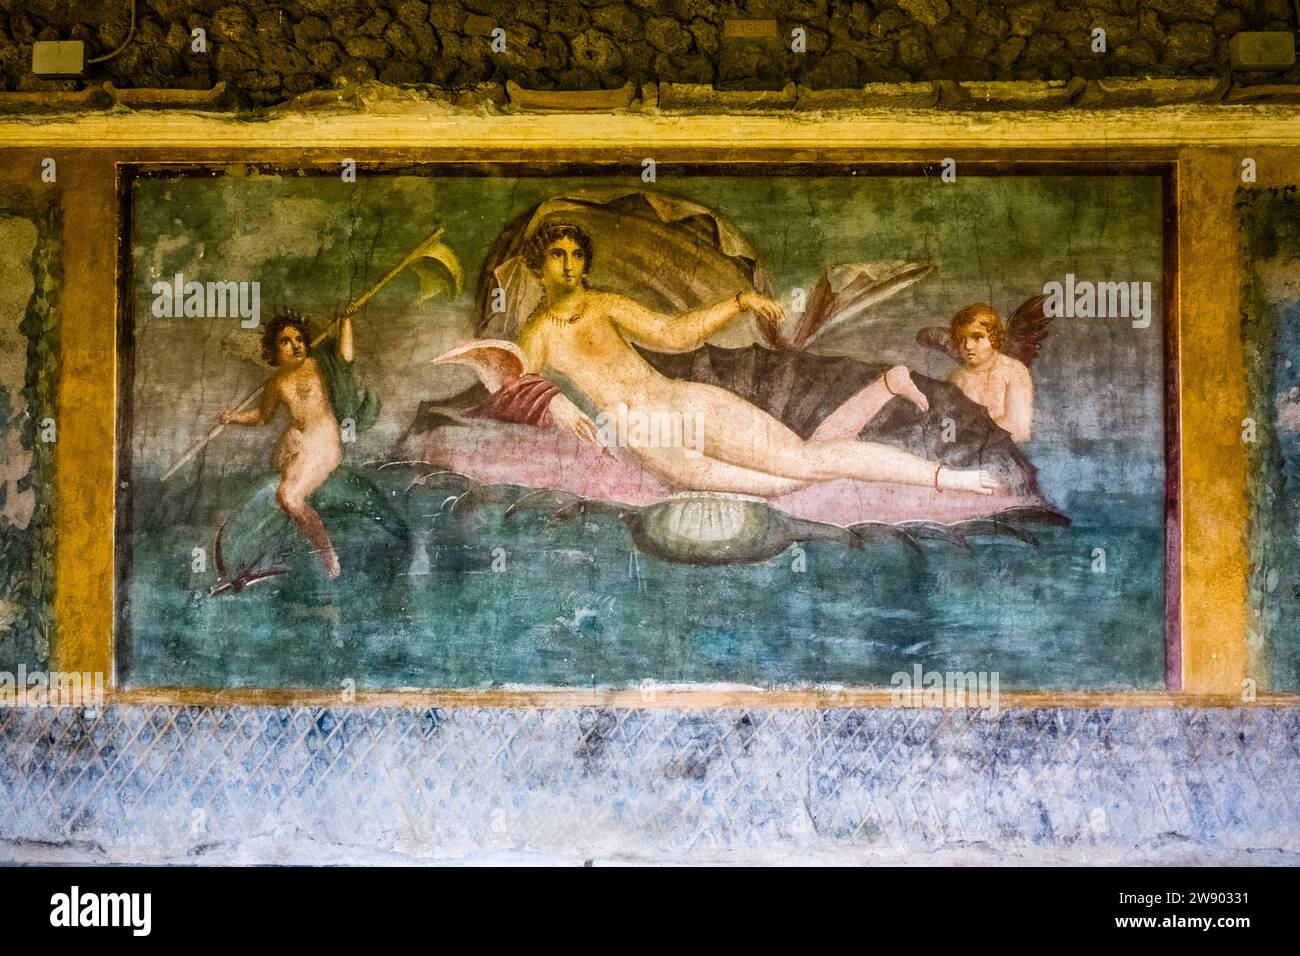 Gemälde in der Casa della Venere in Conchiglia in der archäologischen Stätte von Pompeji, einer antiken Stadt, die durch den Ausbruch des Vesuv in zerstört wurde Stockfoto